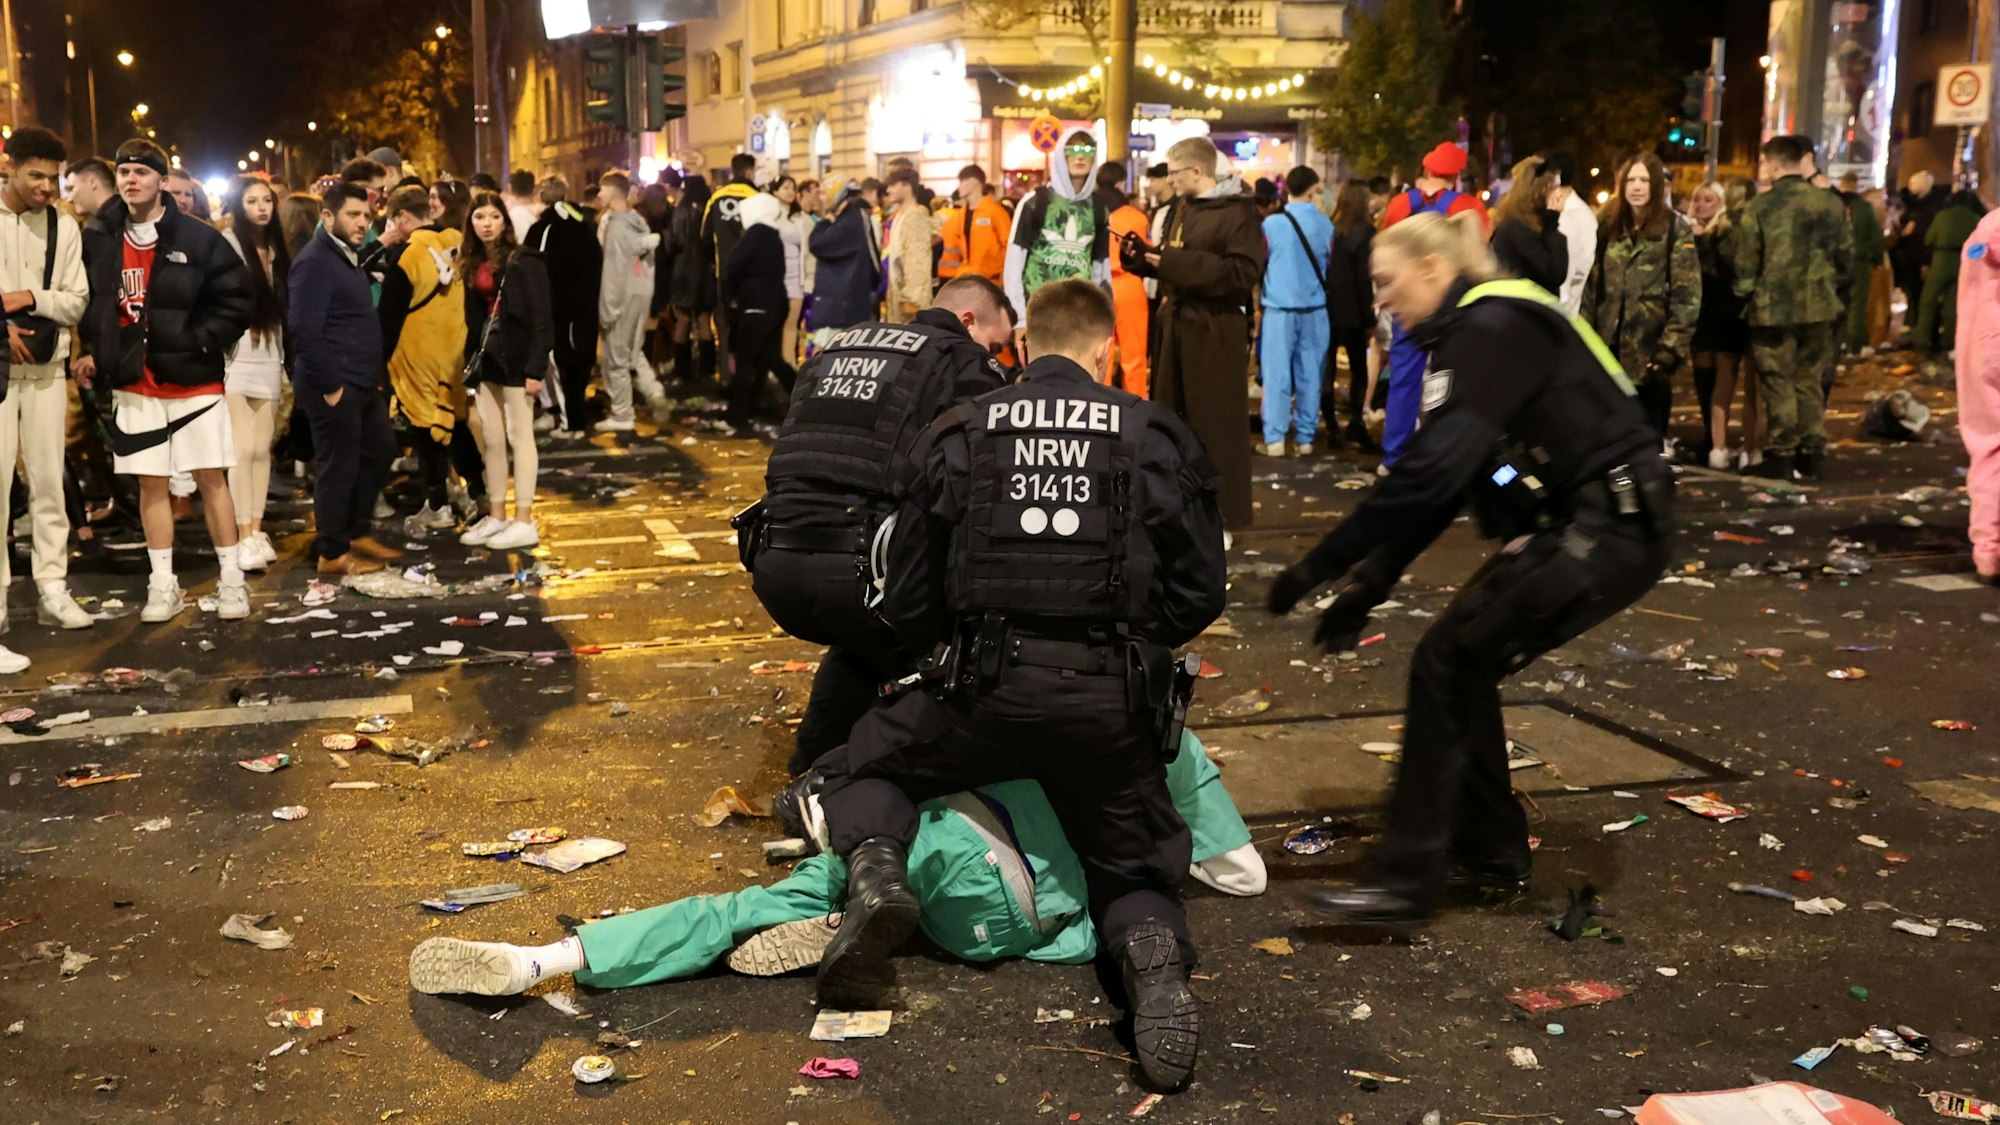 Polizisten bringen am 11.11. 2022 auf der Zülpicher Straße einen als Arzt kostümierten jungen Mann zu Boden.